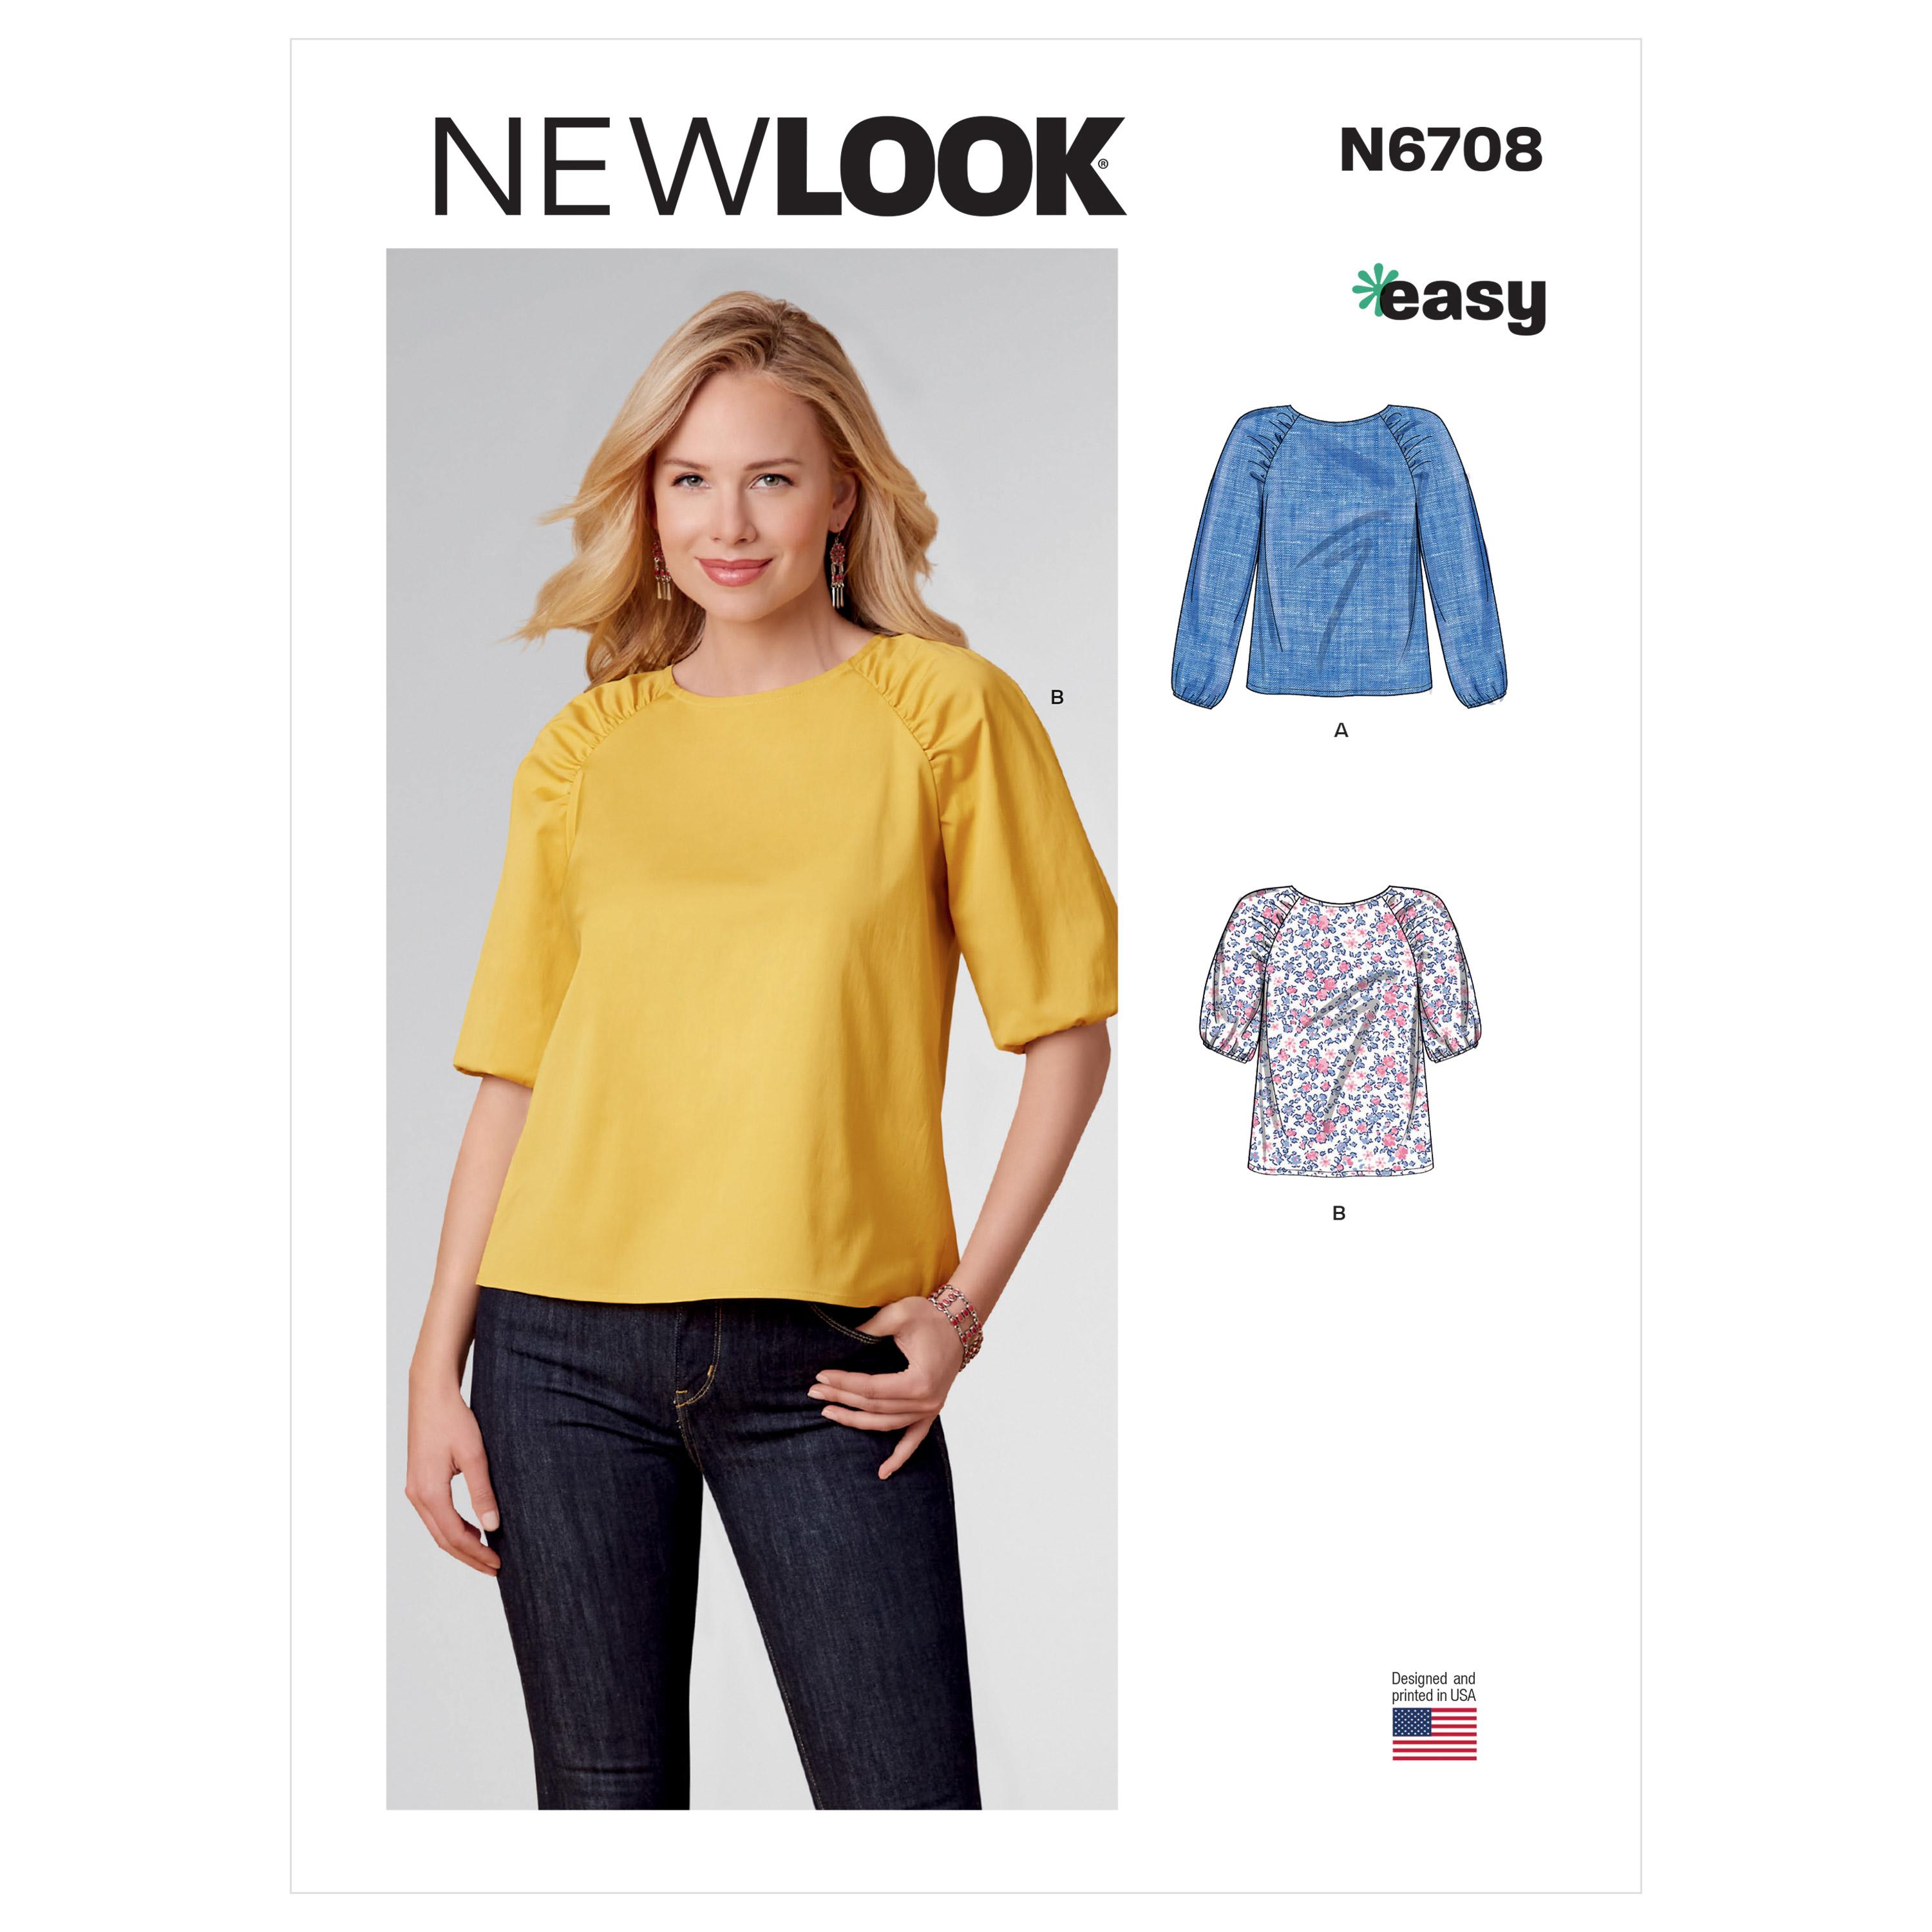 New Look Sewing Pattern N6708 Misses' Tops